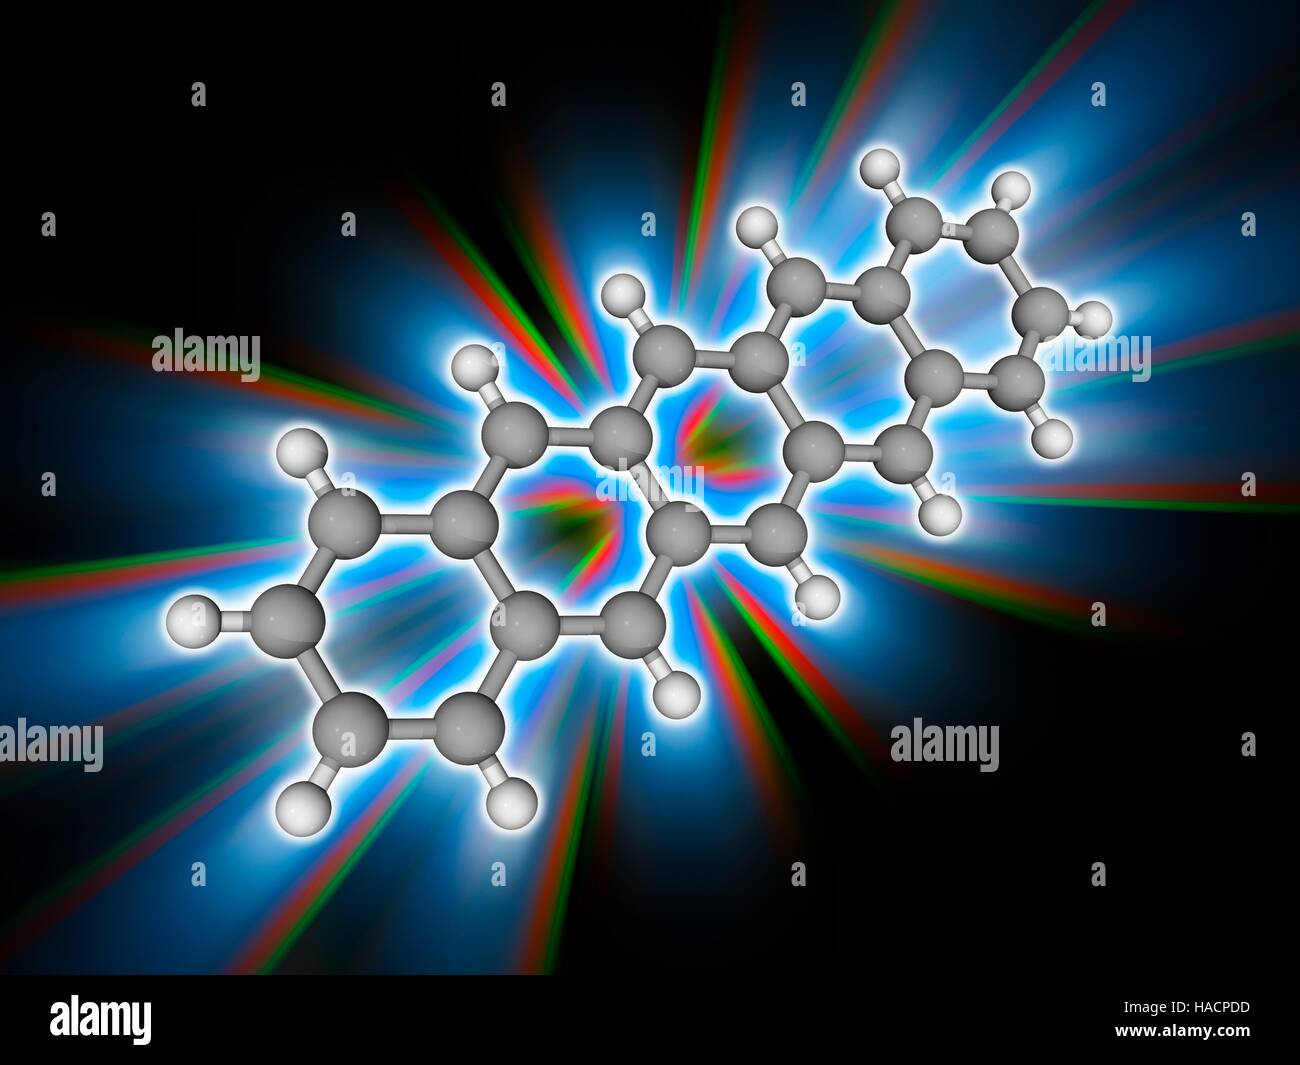 Pentacene. Molekülmodell von polyzyklischen aromatischen Kohlenwasserstoffen Pentacene (C22. H14), eine Chemikalie, die als eine organische Halbleiter wirkt. Atome als Kugeln dargestellt werden und sind farblich gekennzeichnet: Kohlenstoff (grau) und Wasserstoff (weiß). Abbildung. Stockfoto